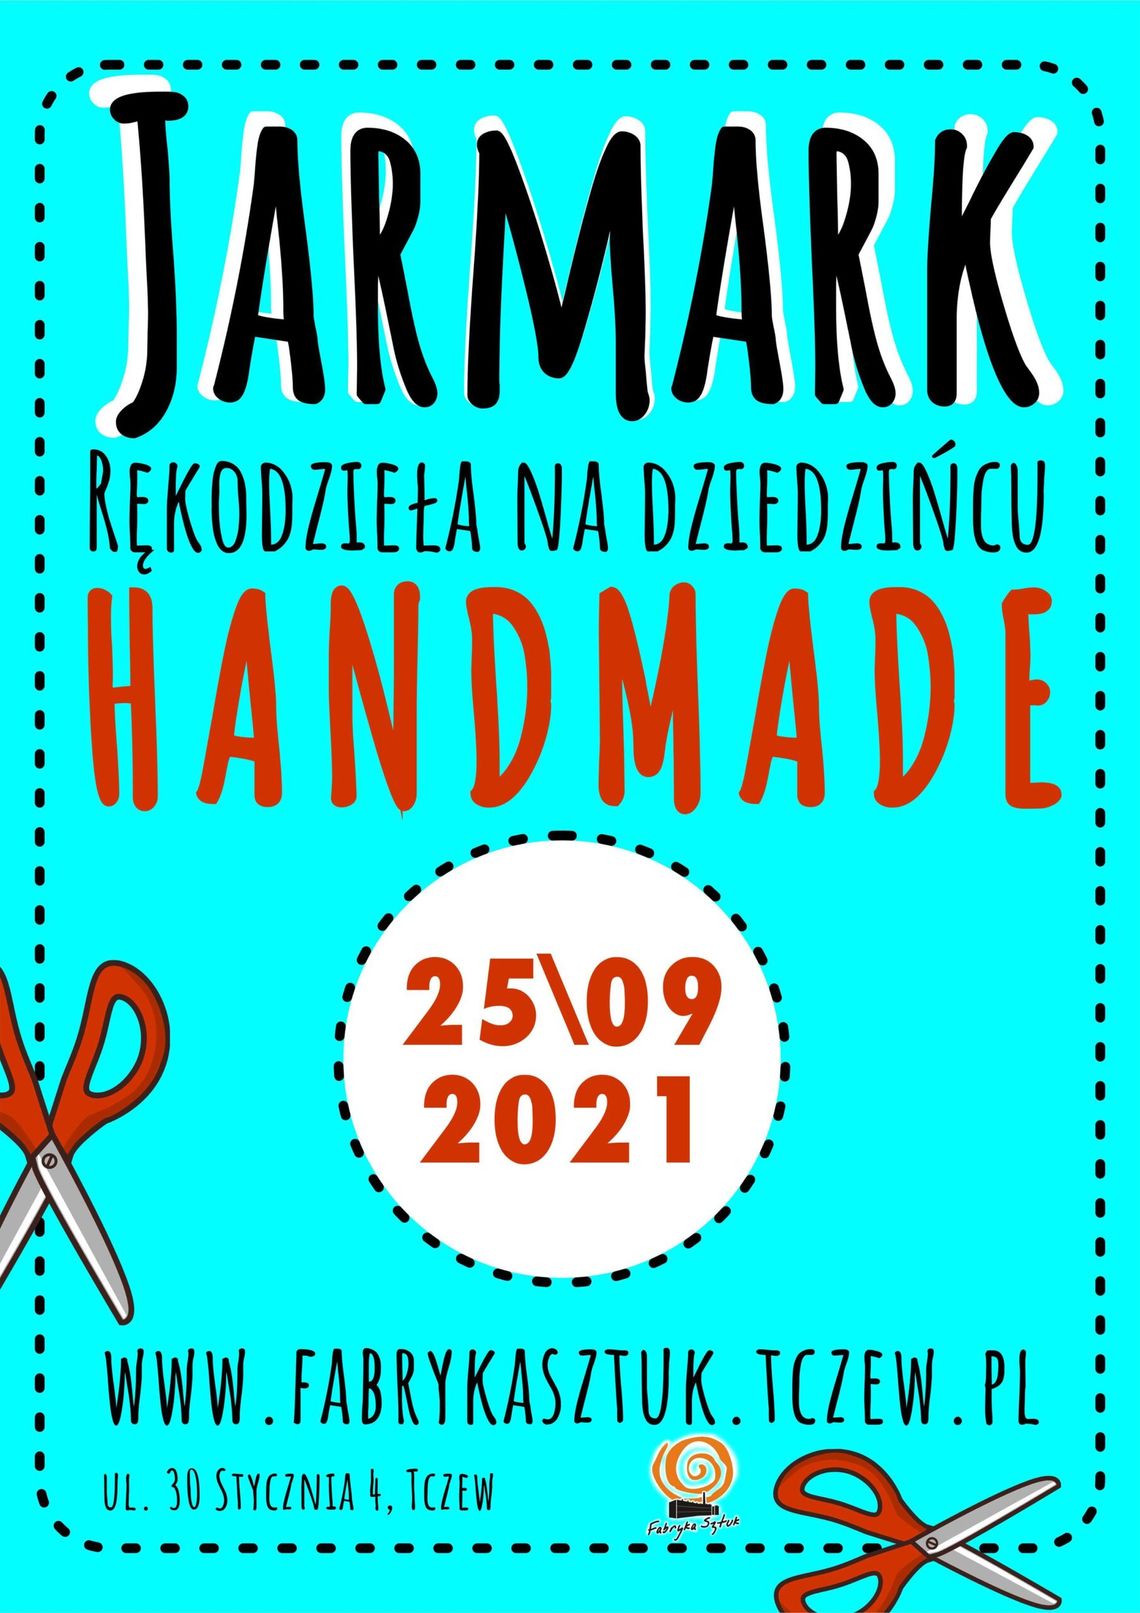 Jarmark HANDMADE w Tczewie - to już dziś!